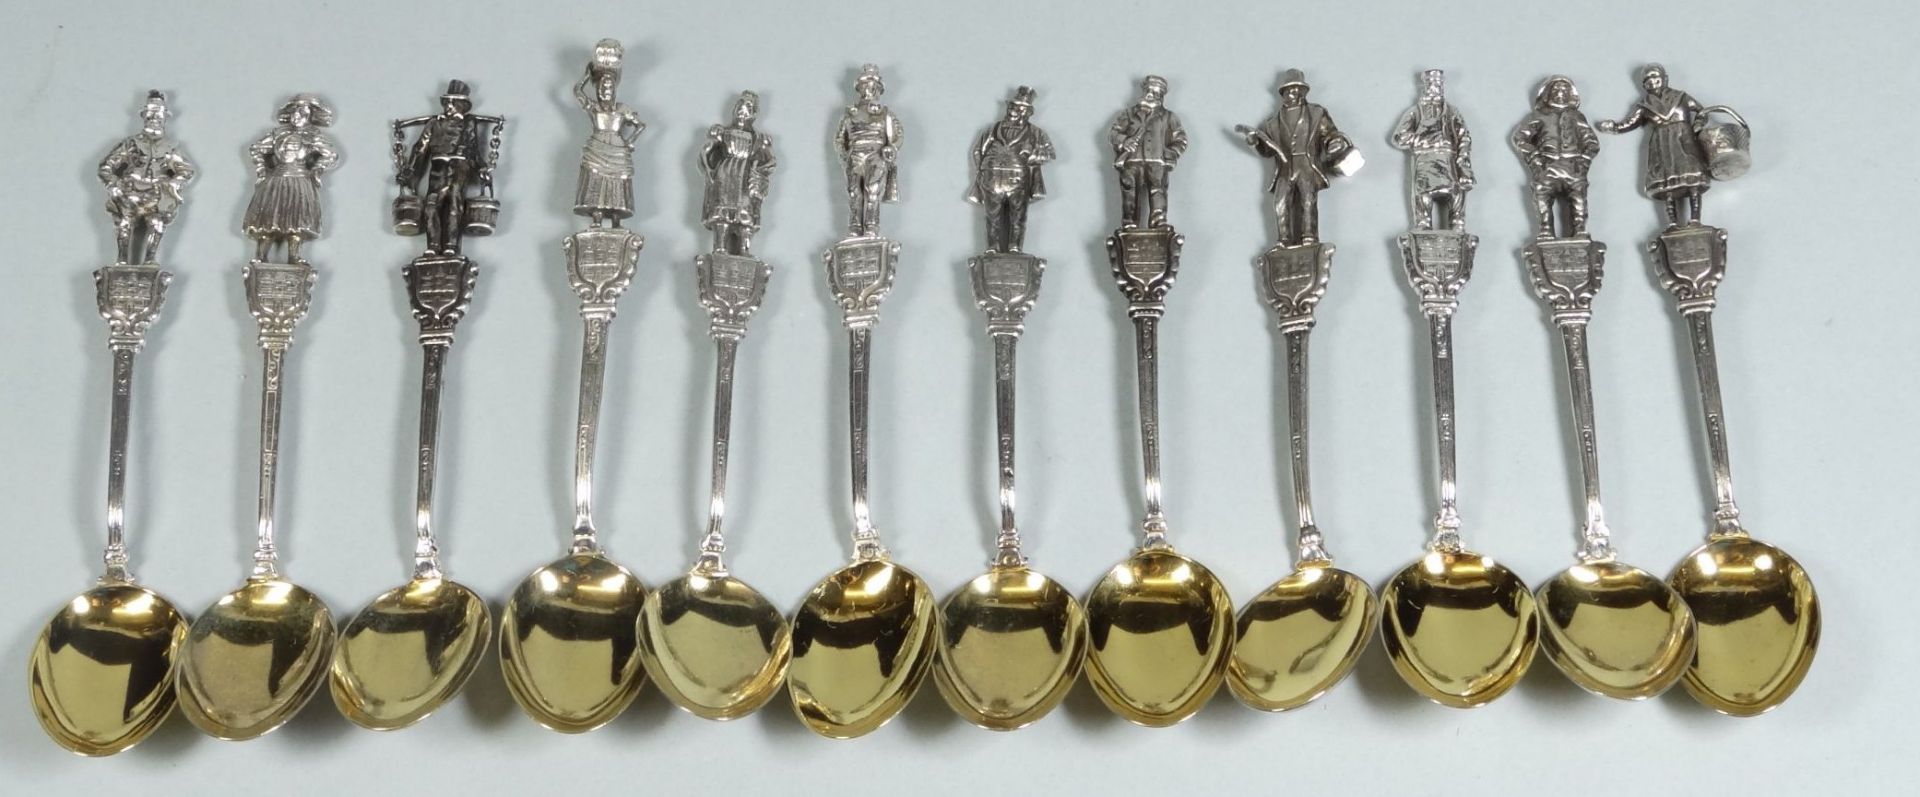 12 figürliche Moccalöffel, Silber-800-, Hamburg, Laffe vergoldet, L-10 cm, zus. 156 g - Bild 3 aus 9